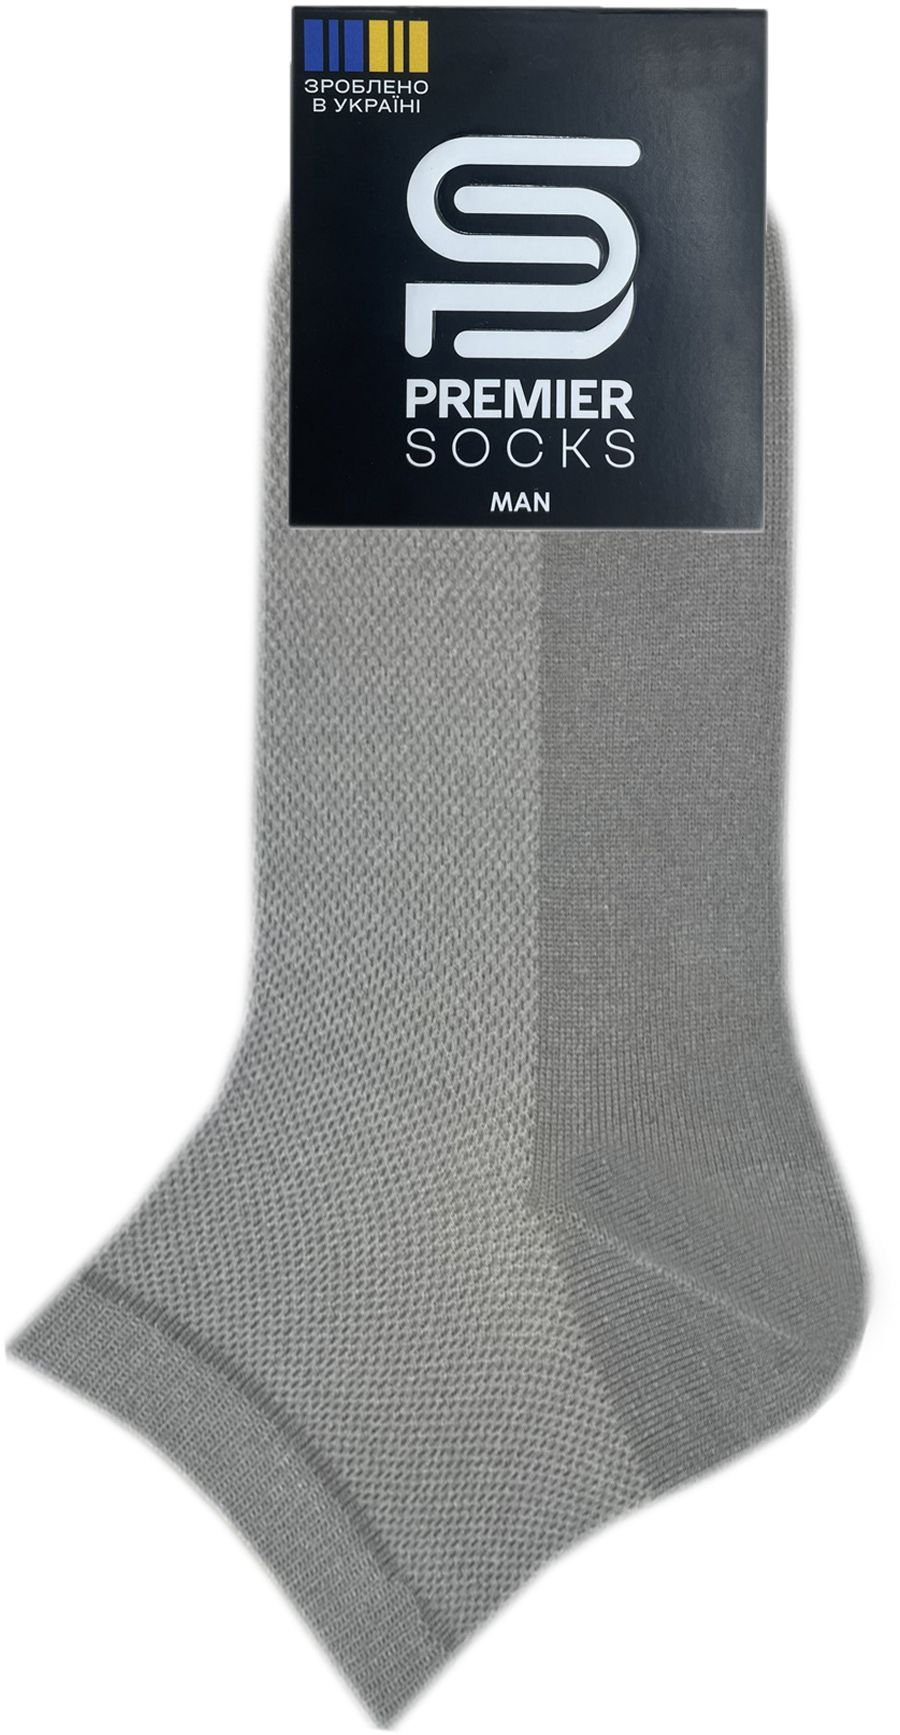 Носки мужские Premier Socks 40-41 1 пара светло-серые (4820163317885) фото 2